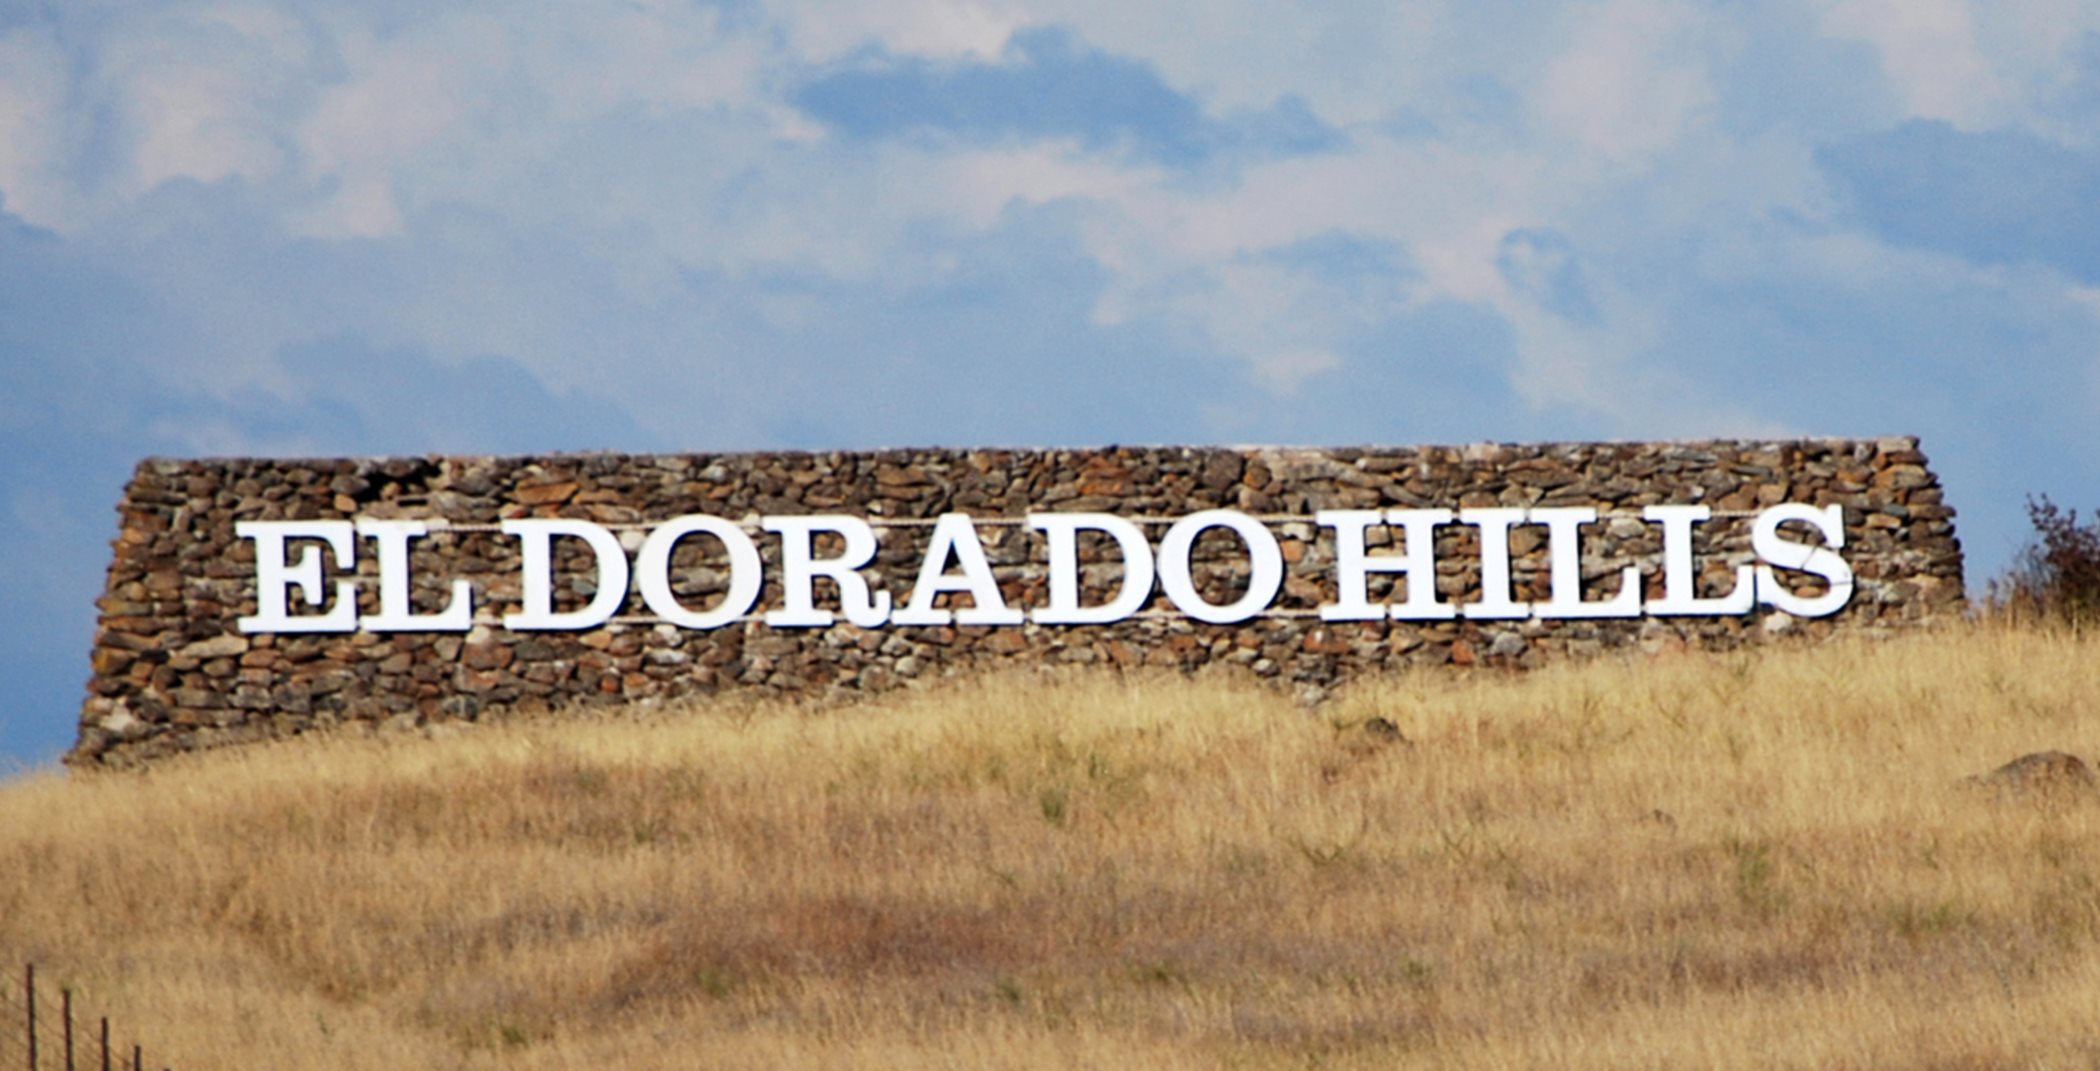 El Dorado Hills sign